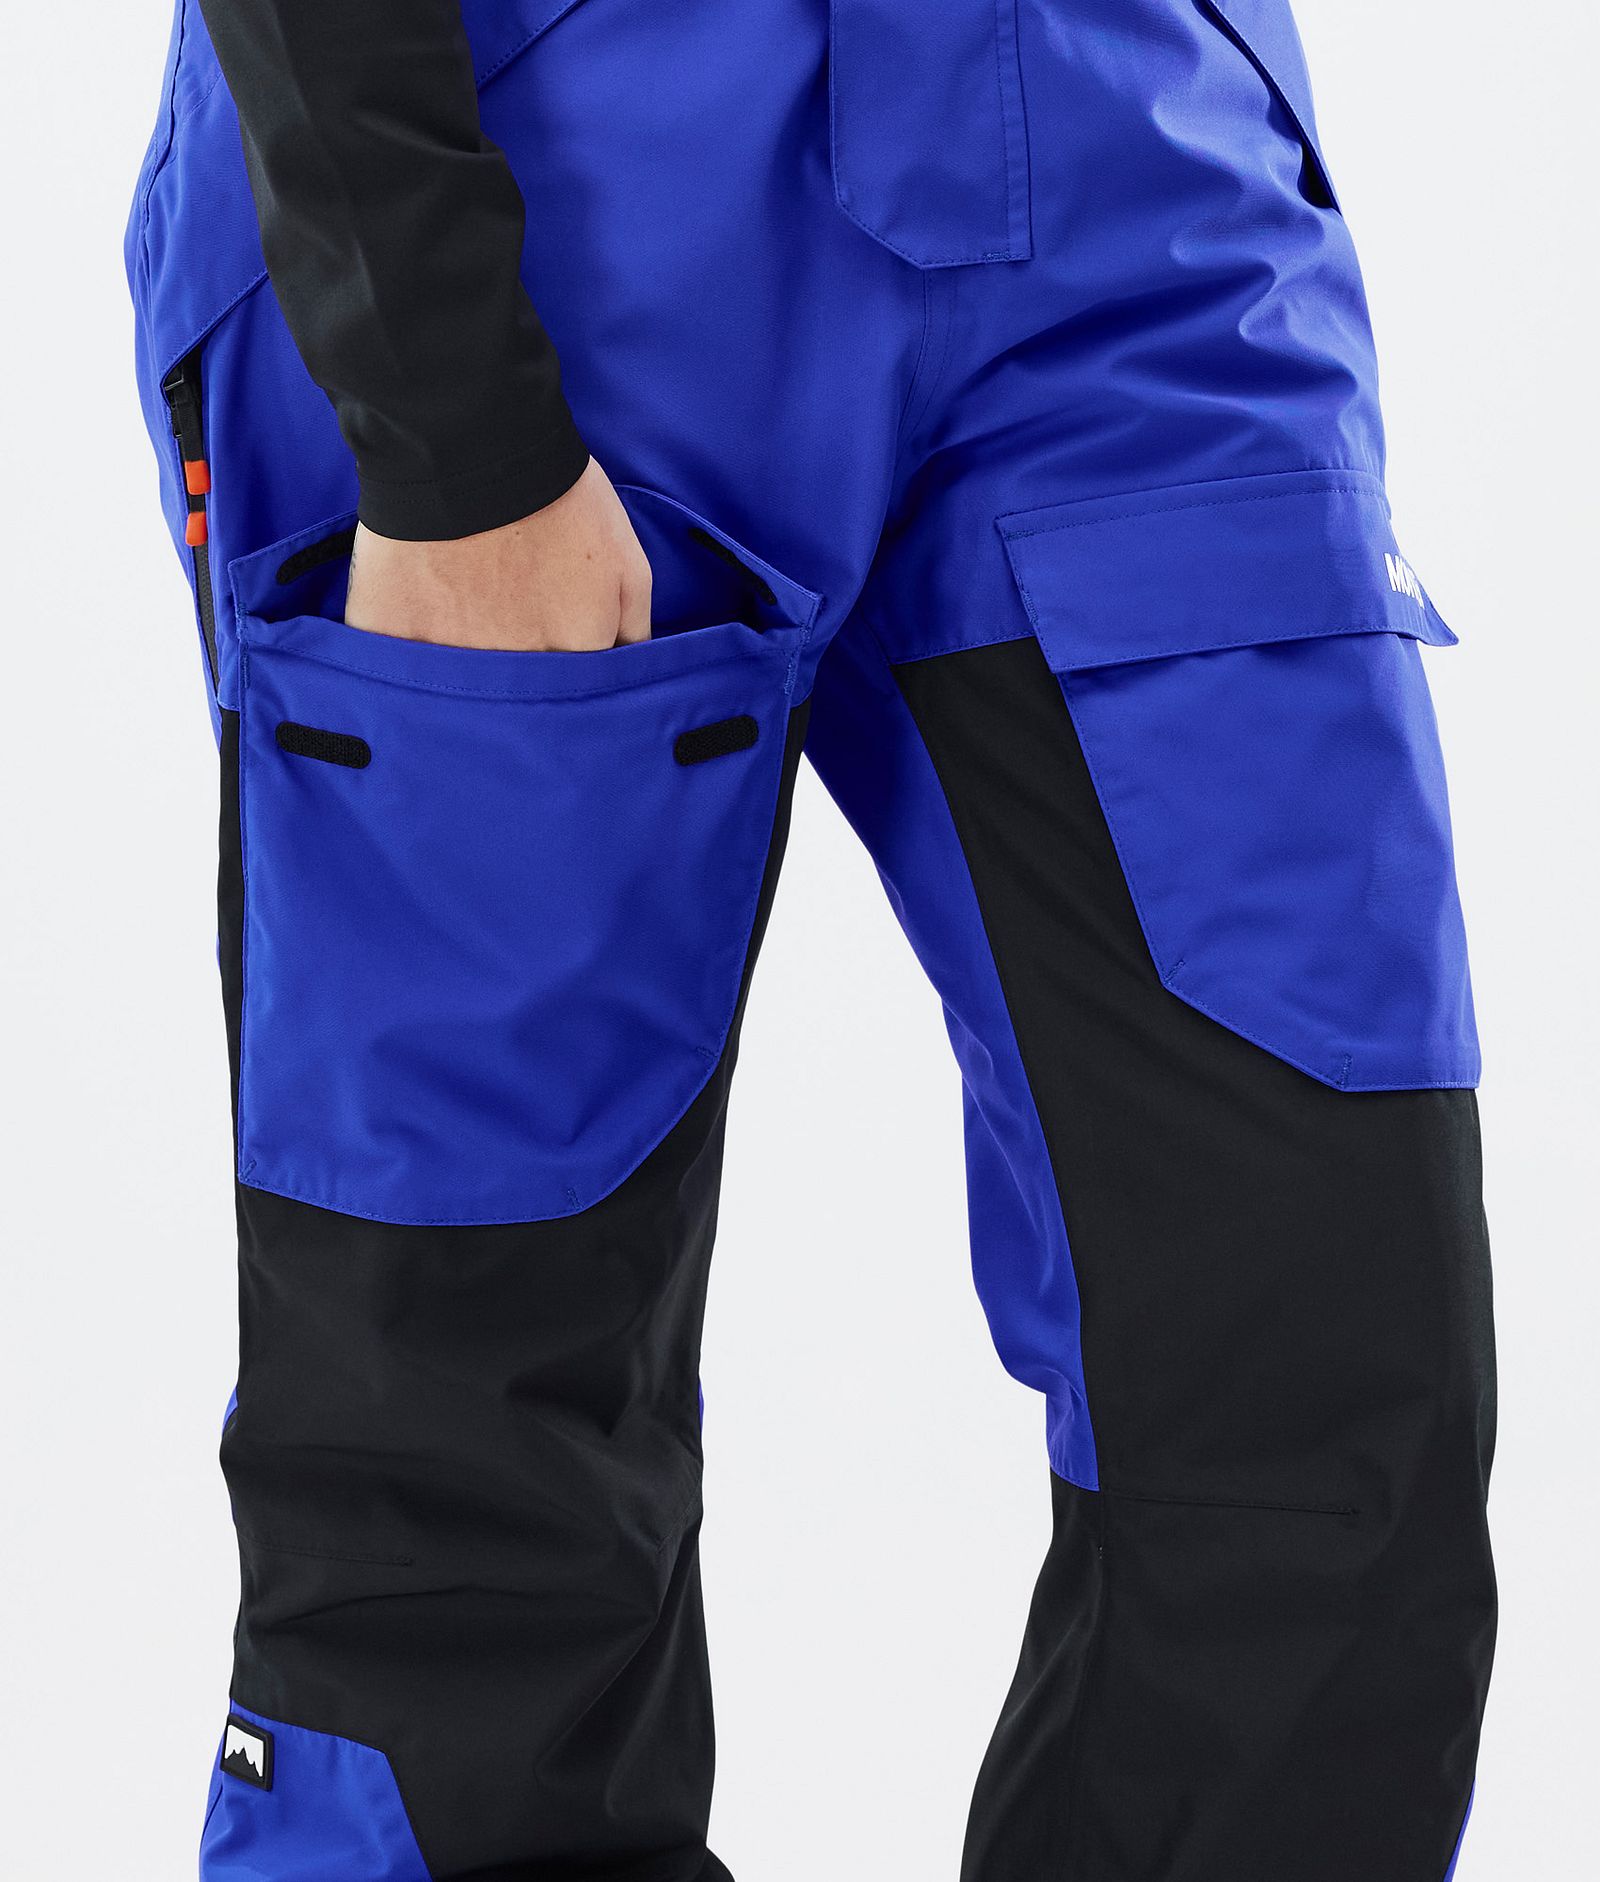 Montec Fawk W Pantalon de Snowboard Femme Cobalt Blue/Black